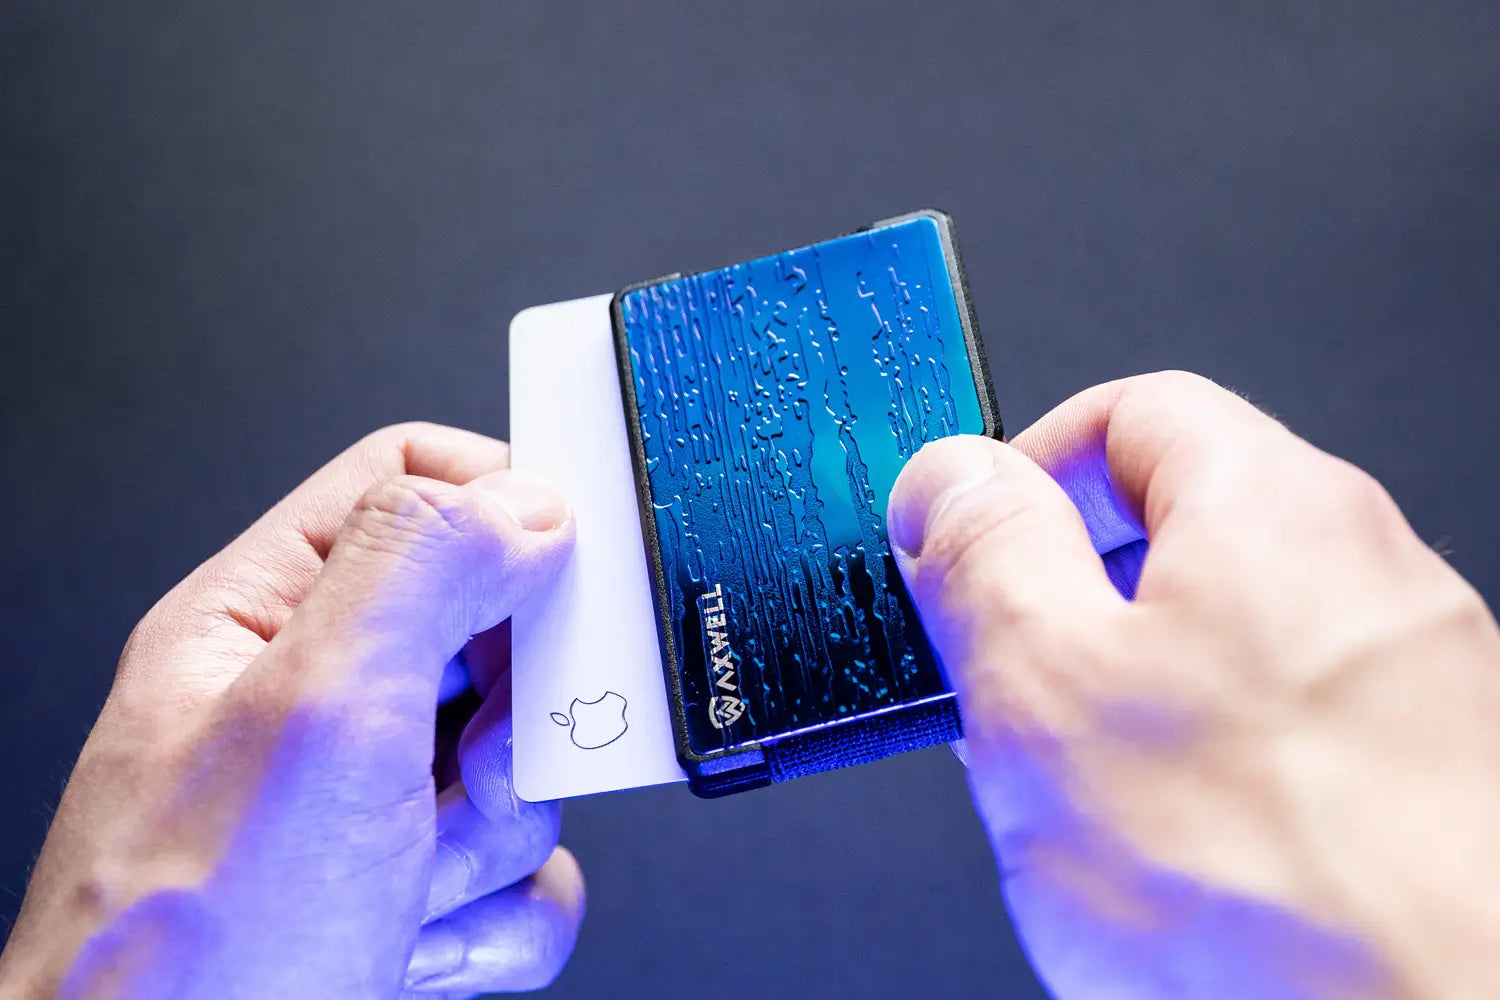 Choosing an RFID Blocking Wallet